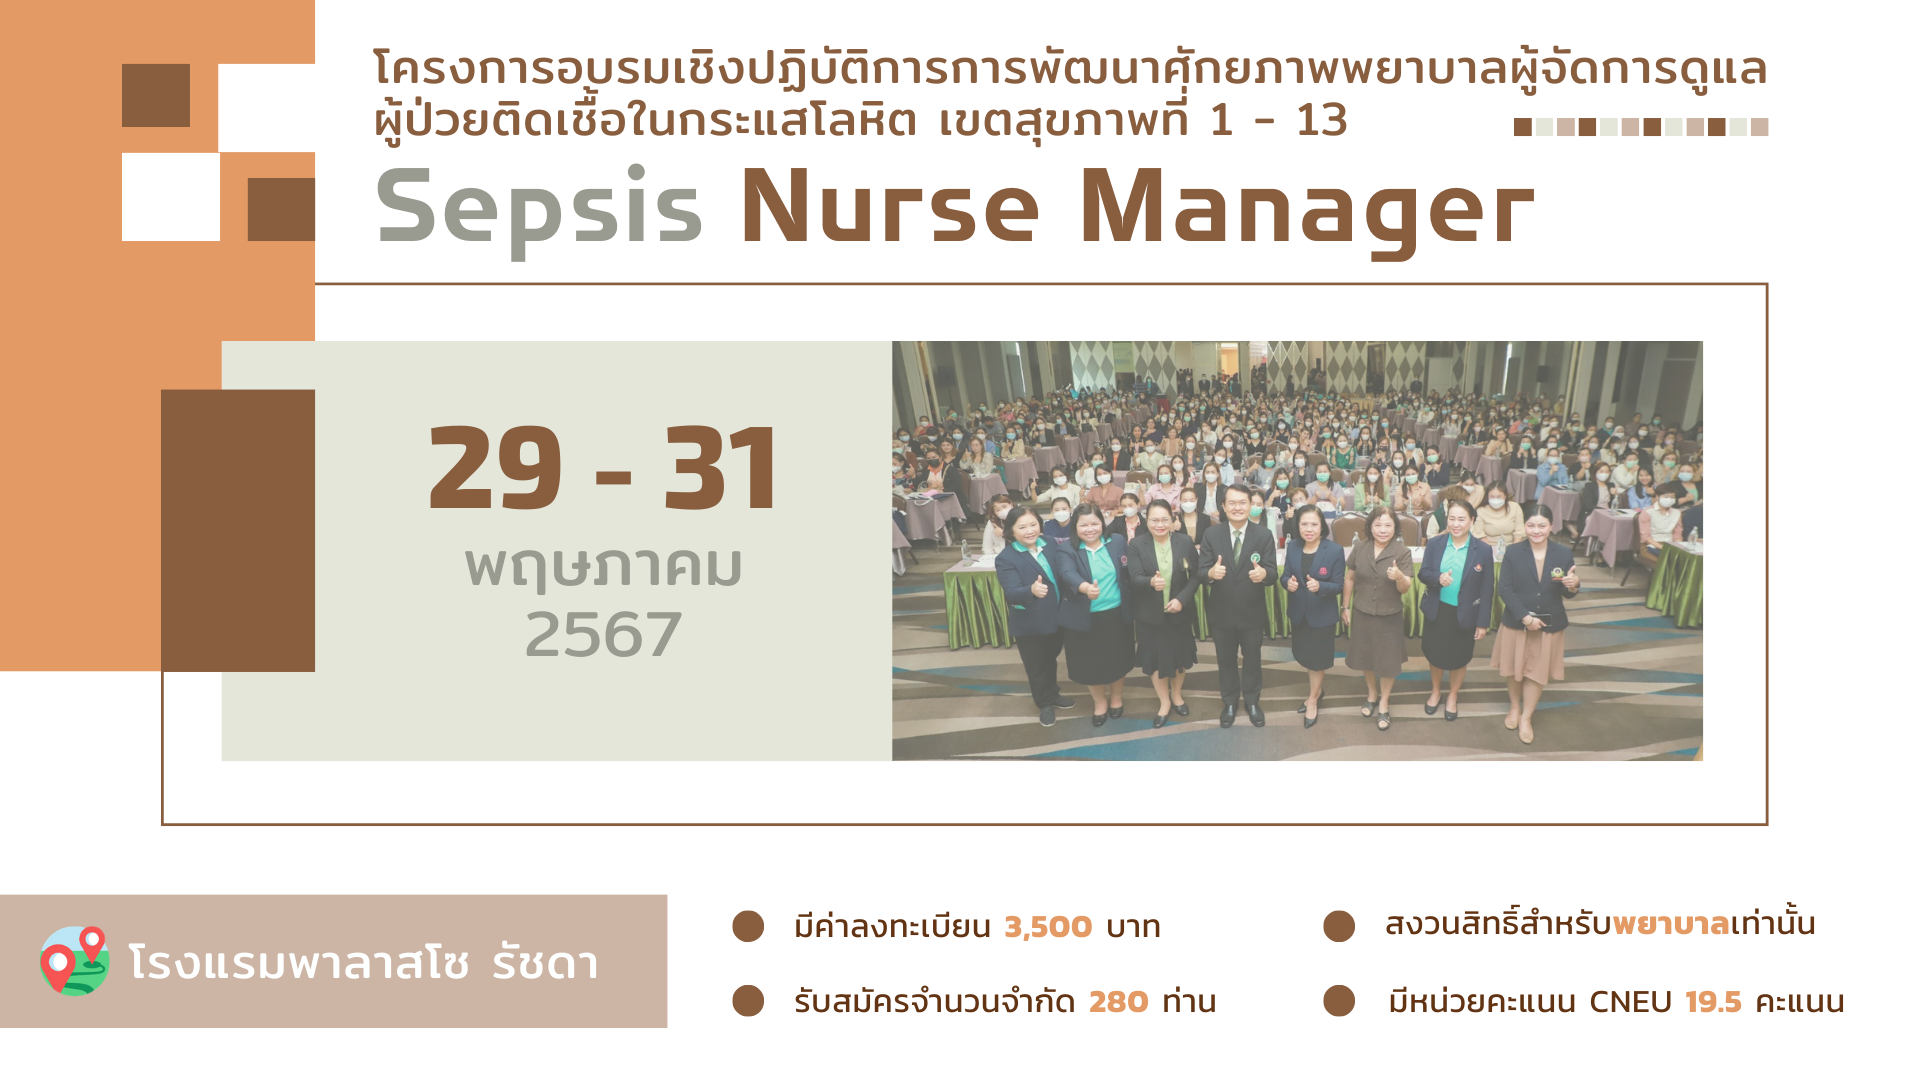 โครงการ Sepsis Nurse Manager ประจำปี 2567